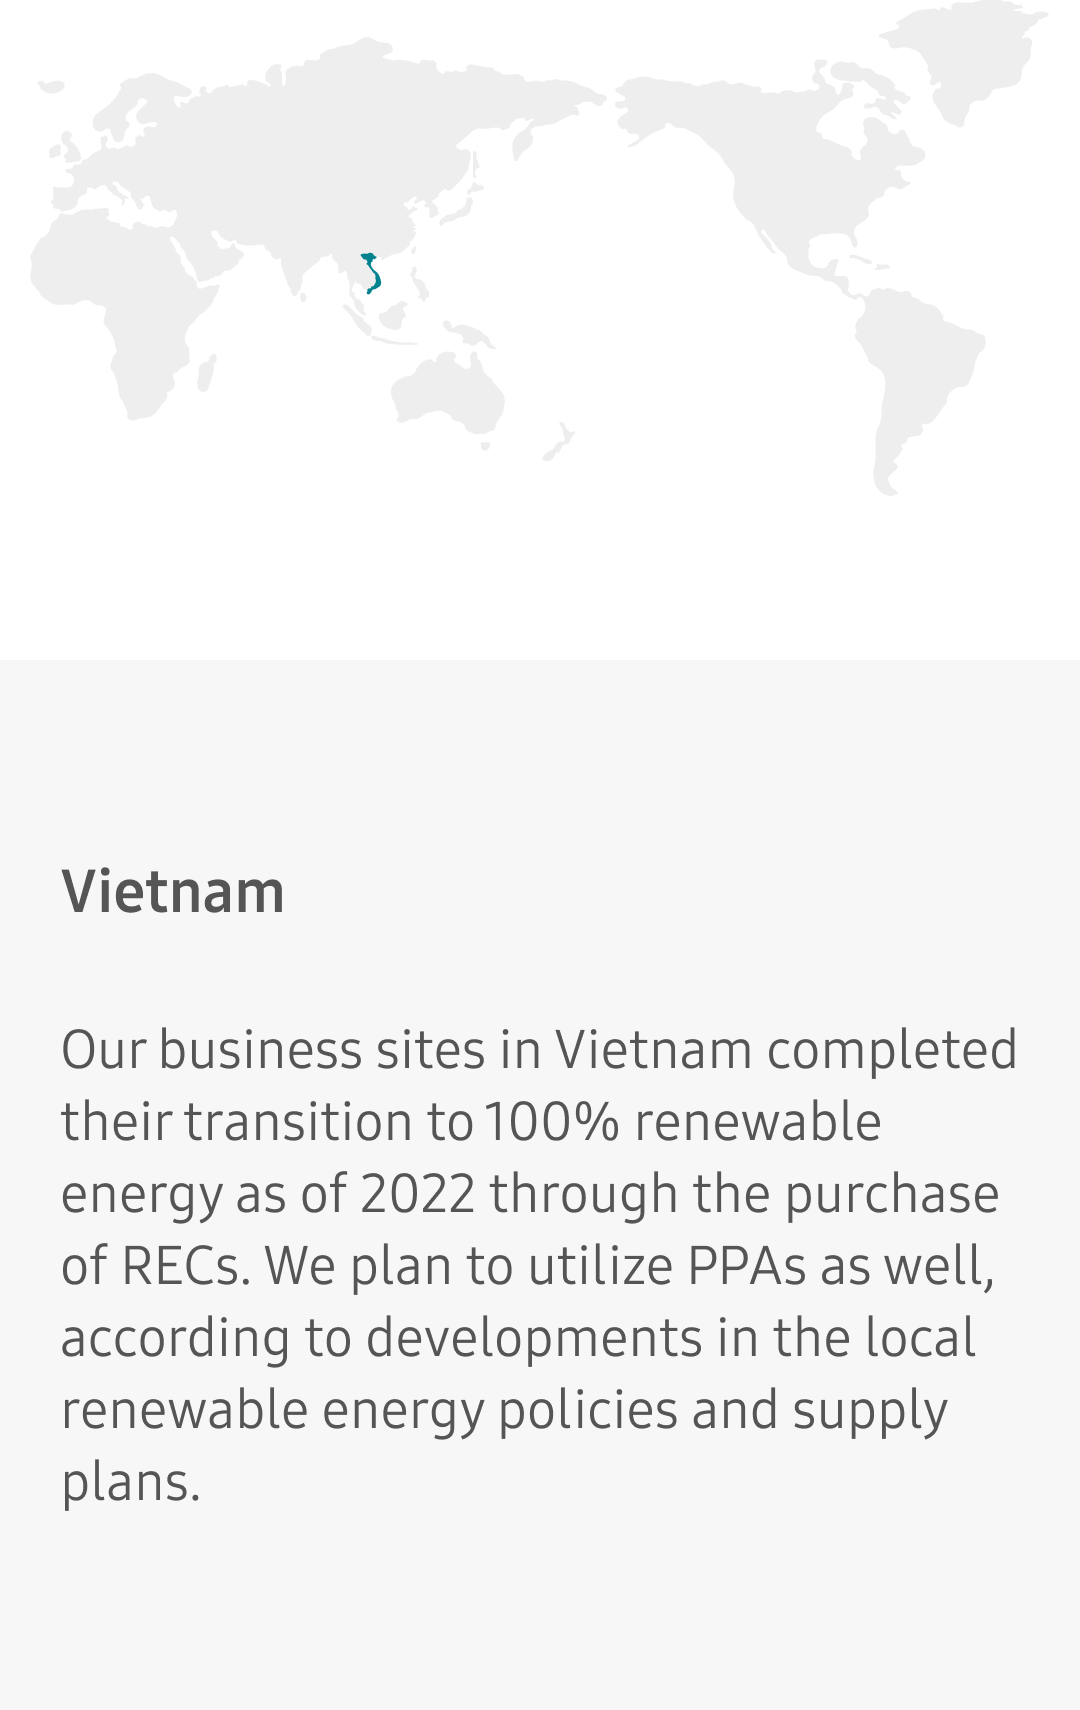 Vietnam 2021 0%, 2022 100%, 2023 100%